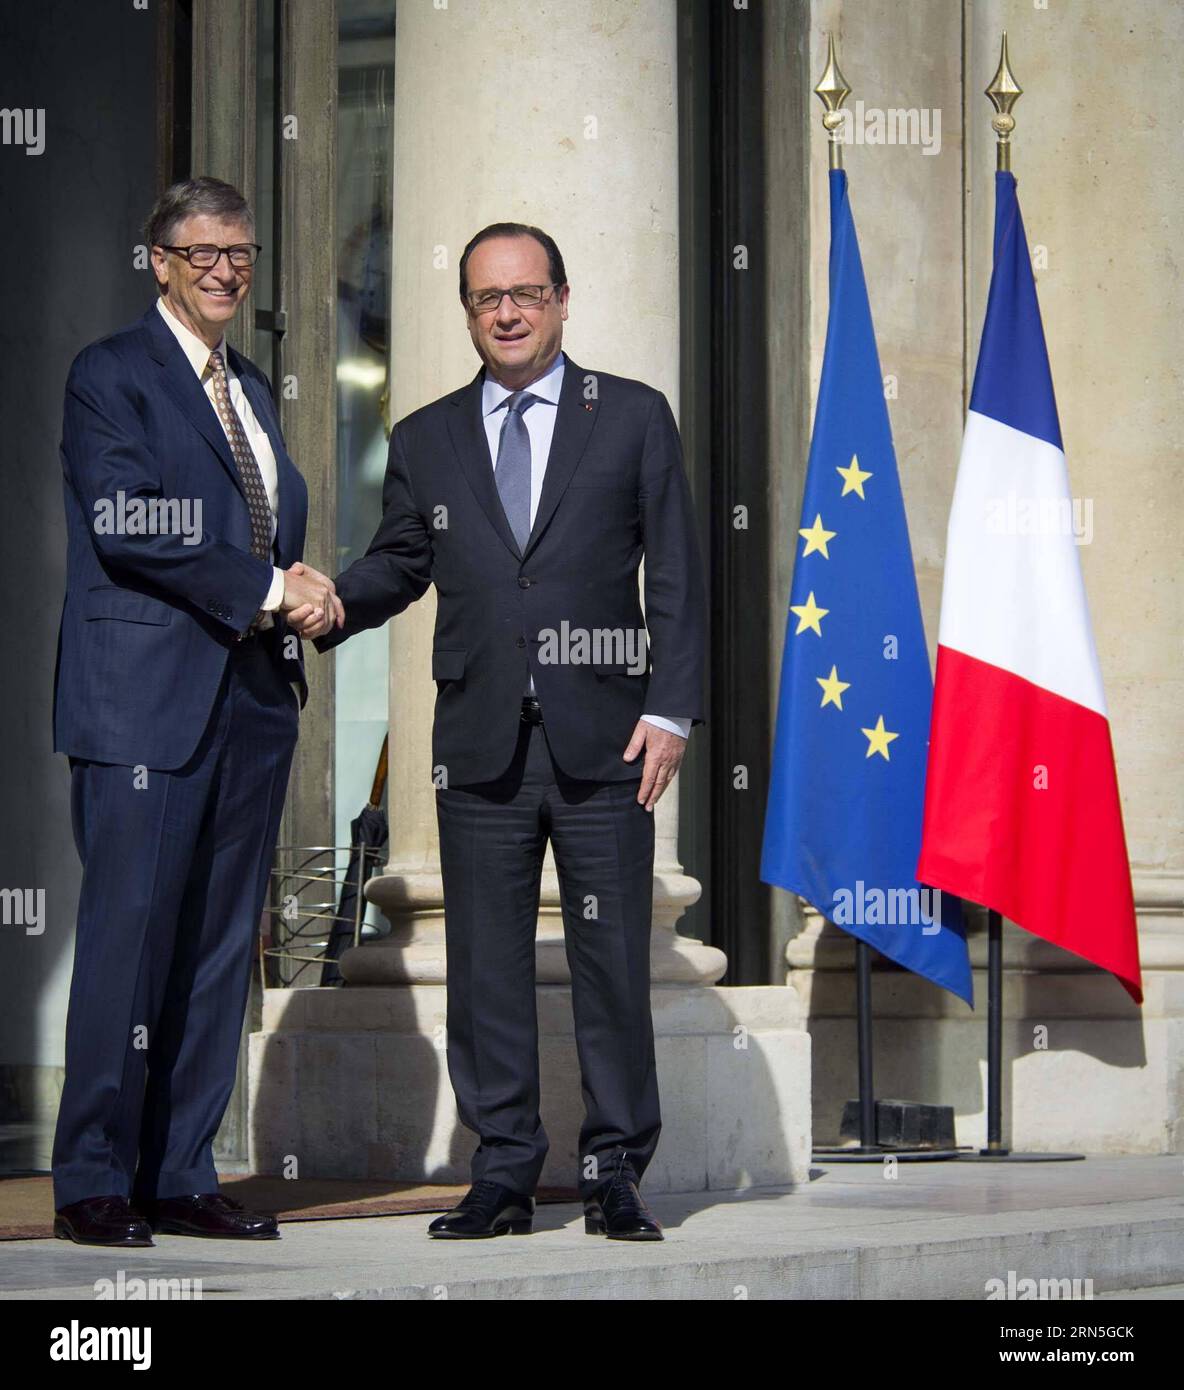 PARIGI, 25 giugno 2015 - il presidente francese Francois Hollande R stringe la mano al fondatore di Microsoft Bill Gates, co-presidente della Fondazione Bill & Melinda Gates, dopo il loro incontro all'Elysee Palace a Parigi, in Francia, il 25 giugno 2015. Zhf FRANCE-PARIS-HOLLANDE-BILL GATES-MEETING ChenxXiaowei PUBLICATIONxNOTxINxCHN Foto Stock